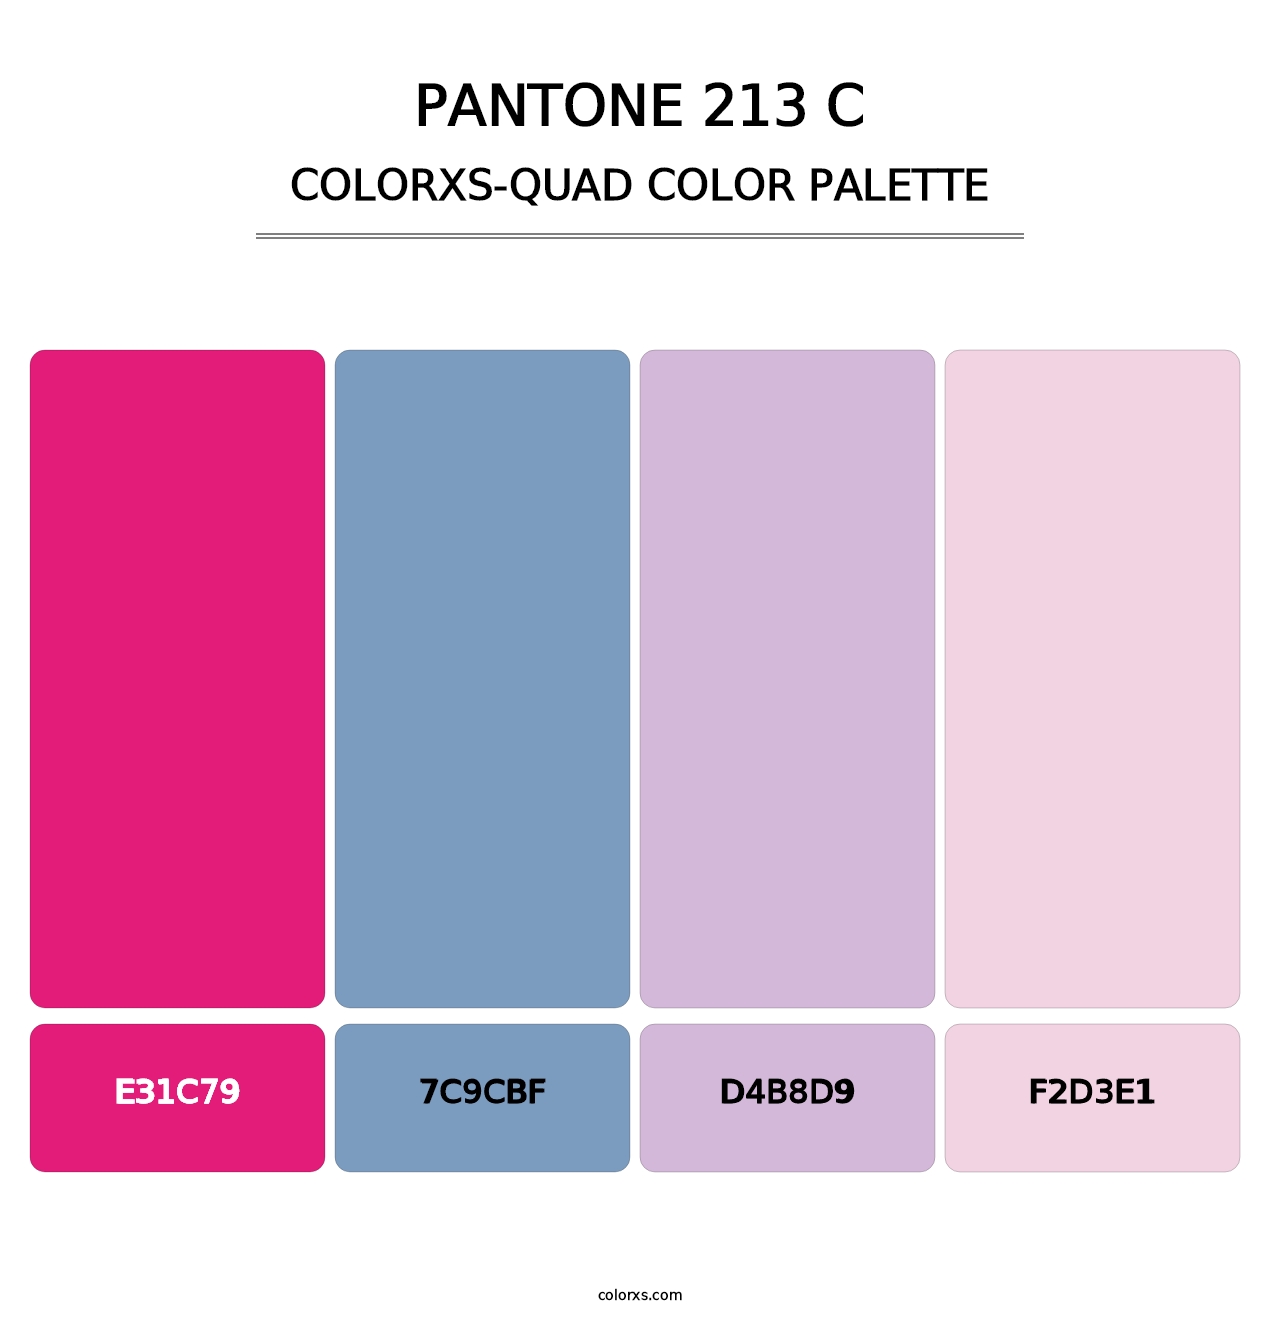 PANTONE 213 C - Colorxs Quad Palette